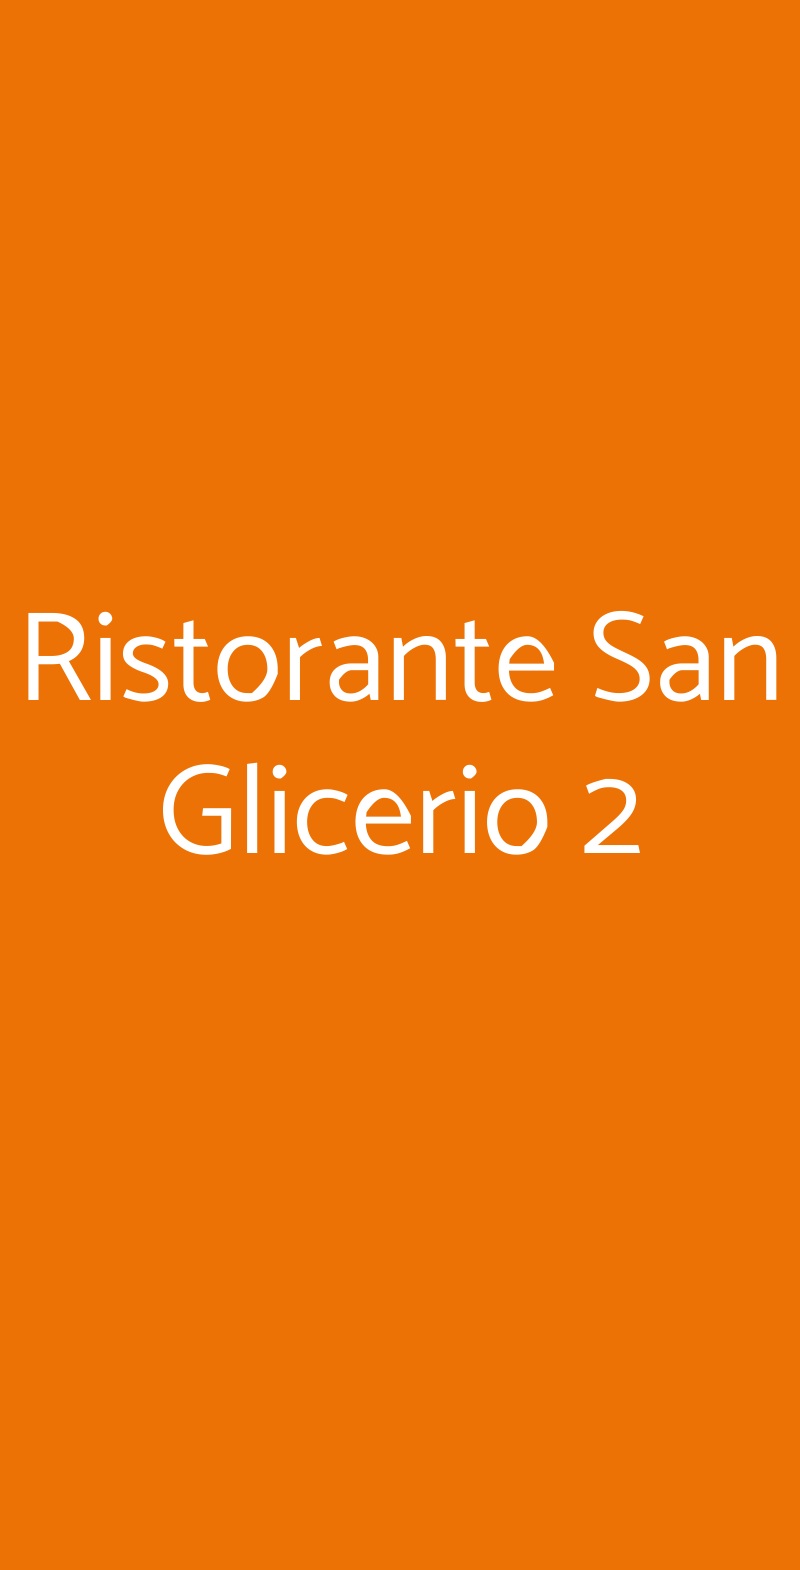 Ristorante San Glicerio 2 Milano menù 1 pagina